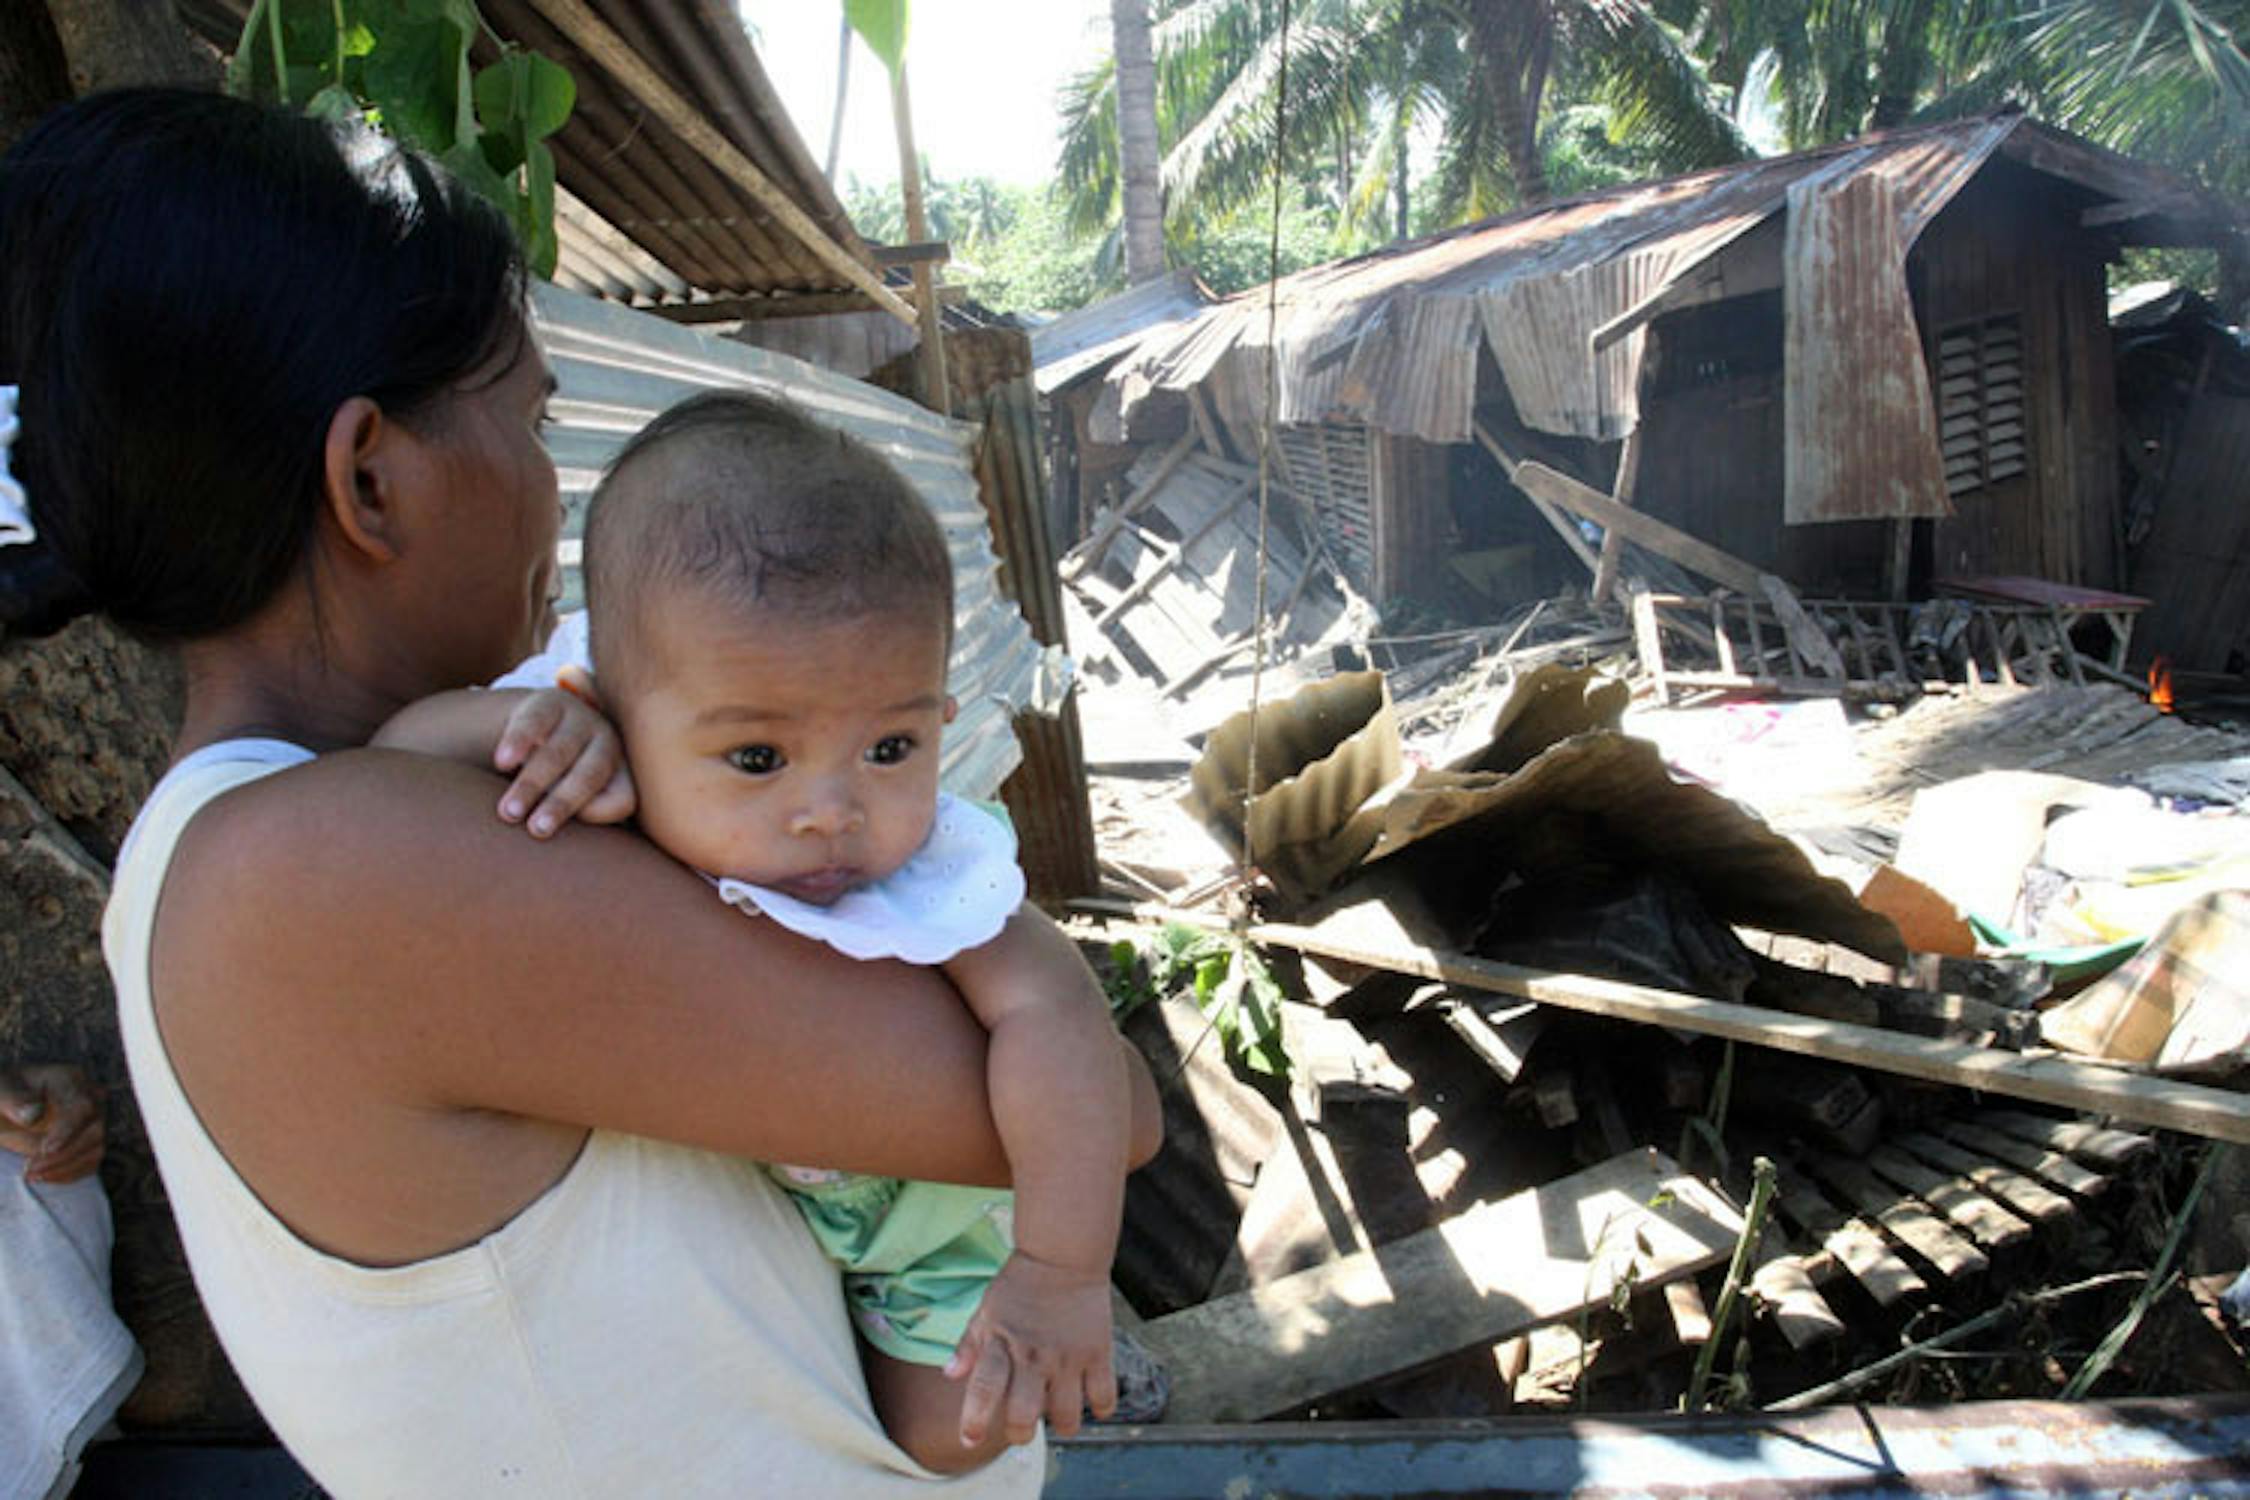 La piccola Marry, 4 mesi, in braccio alla mamma di fronte alle macerie della sua casa - ©UNICEF Filippine/2011/Maitem